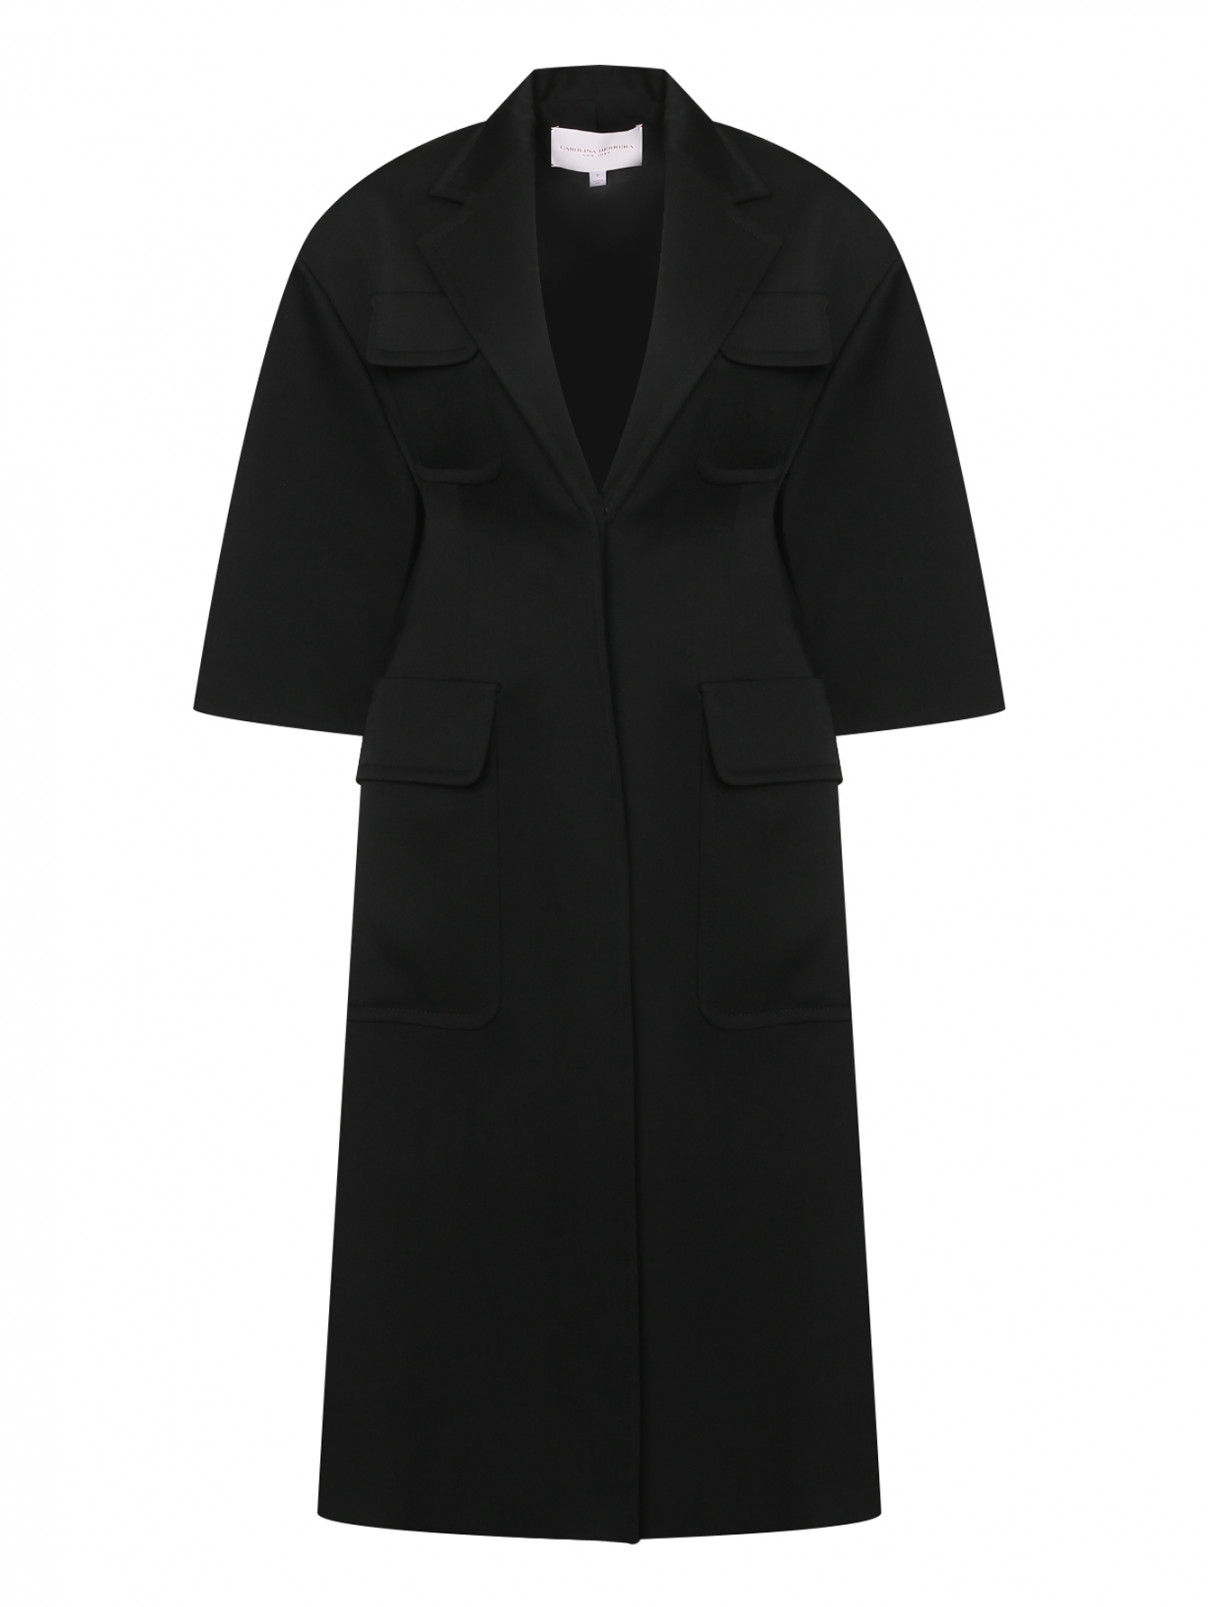 Пальто из шерсти с накладными карманами Carolina Herrera  –  Общий вид  – Цвет:  Черный